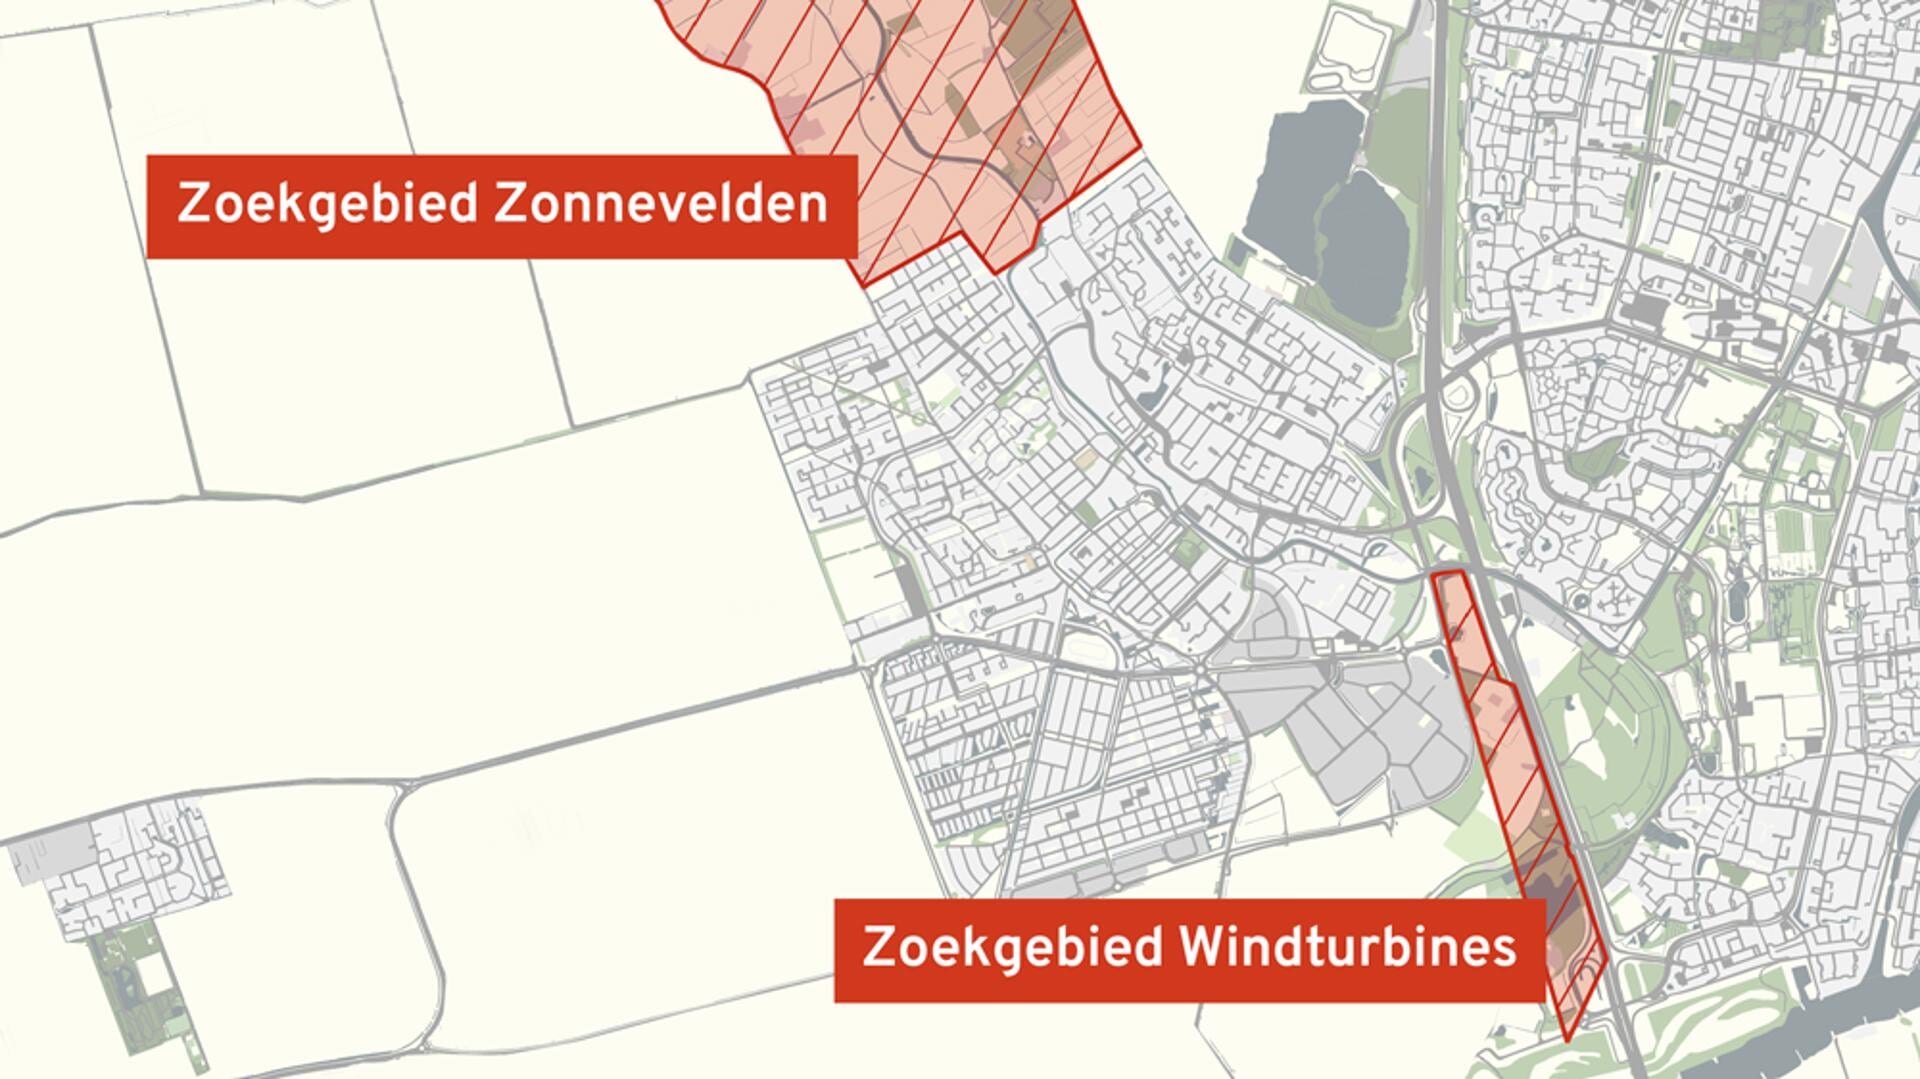 • Kaart van zoekgebieden voor windturbines en zonnevelden in IJsselstein.